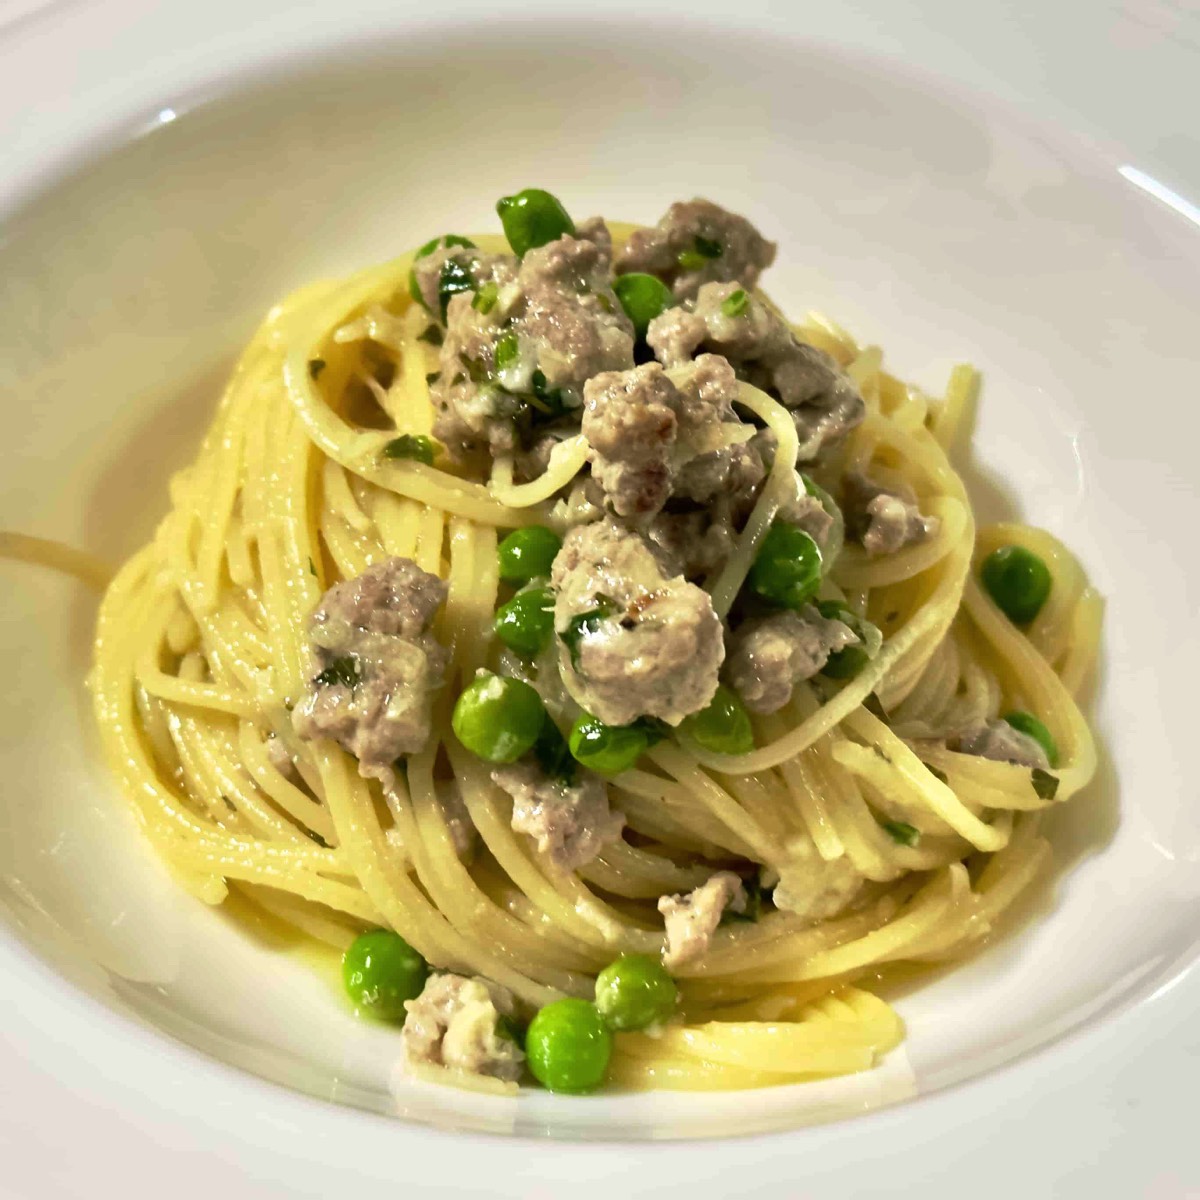 Piacere Cucinare: Simple recipes that's a pleasure to cook - spaghettini